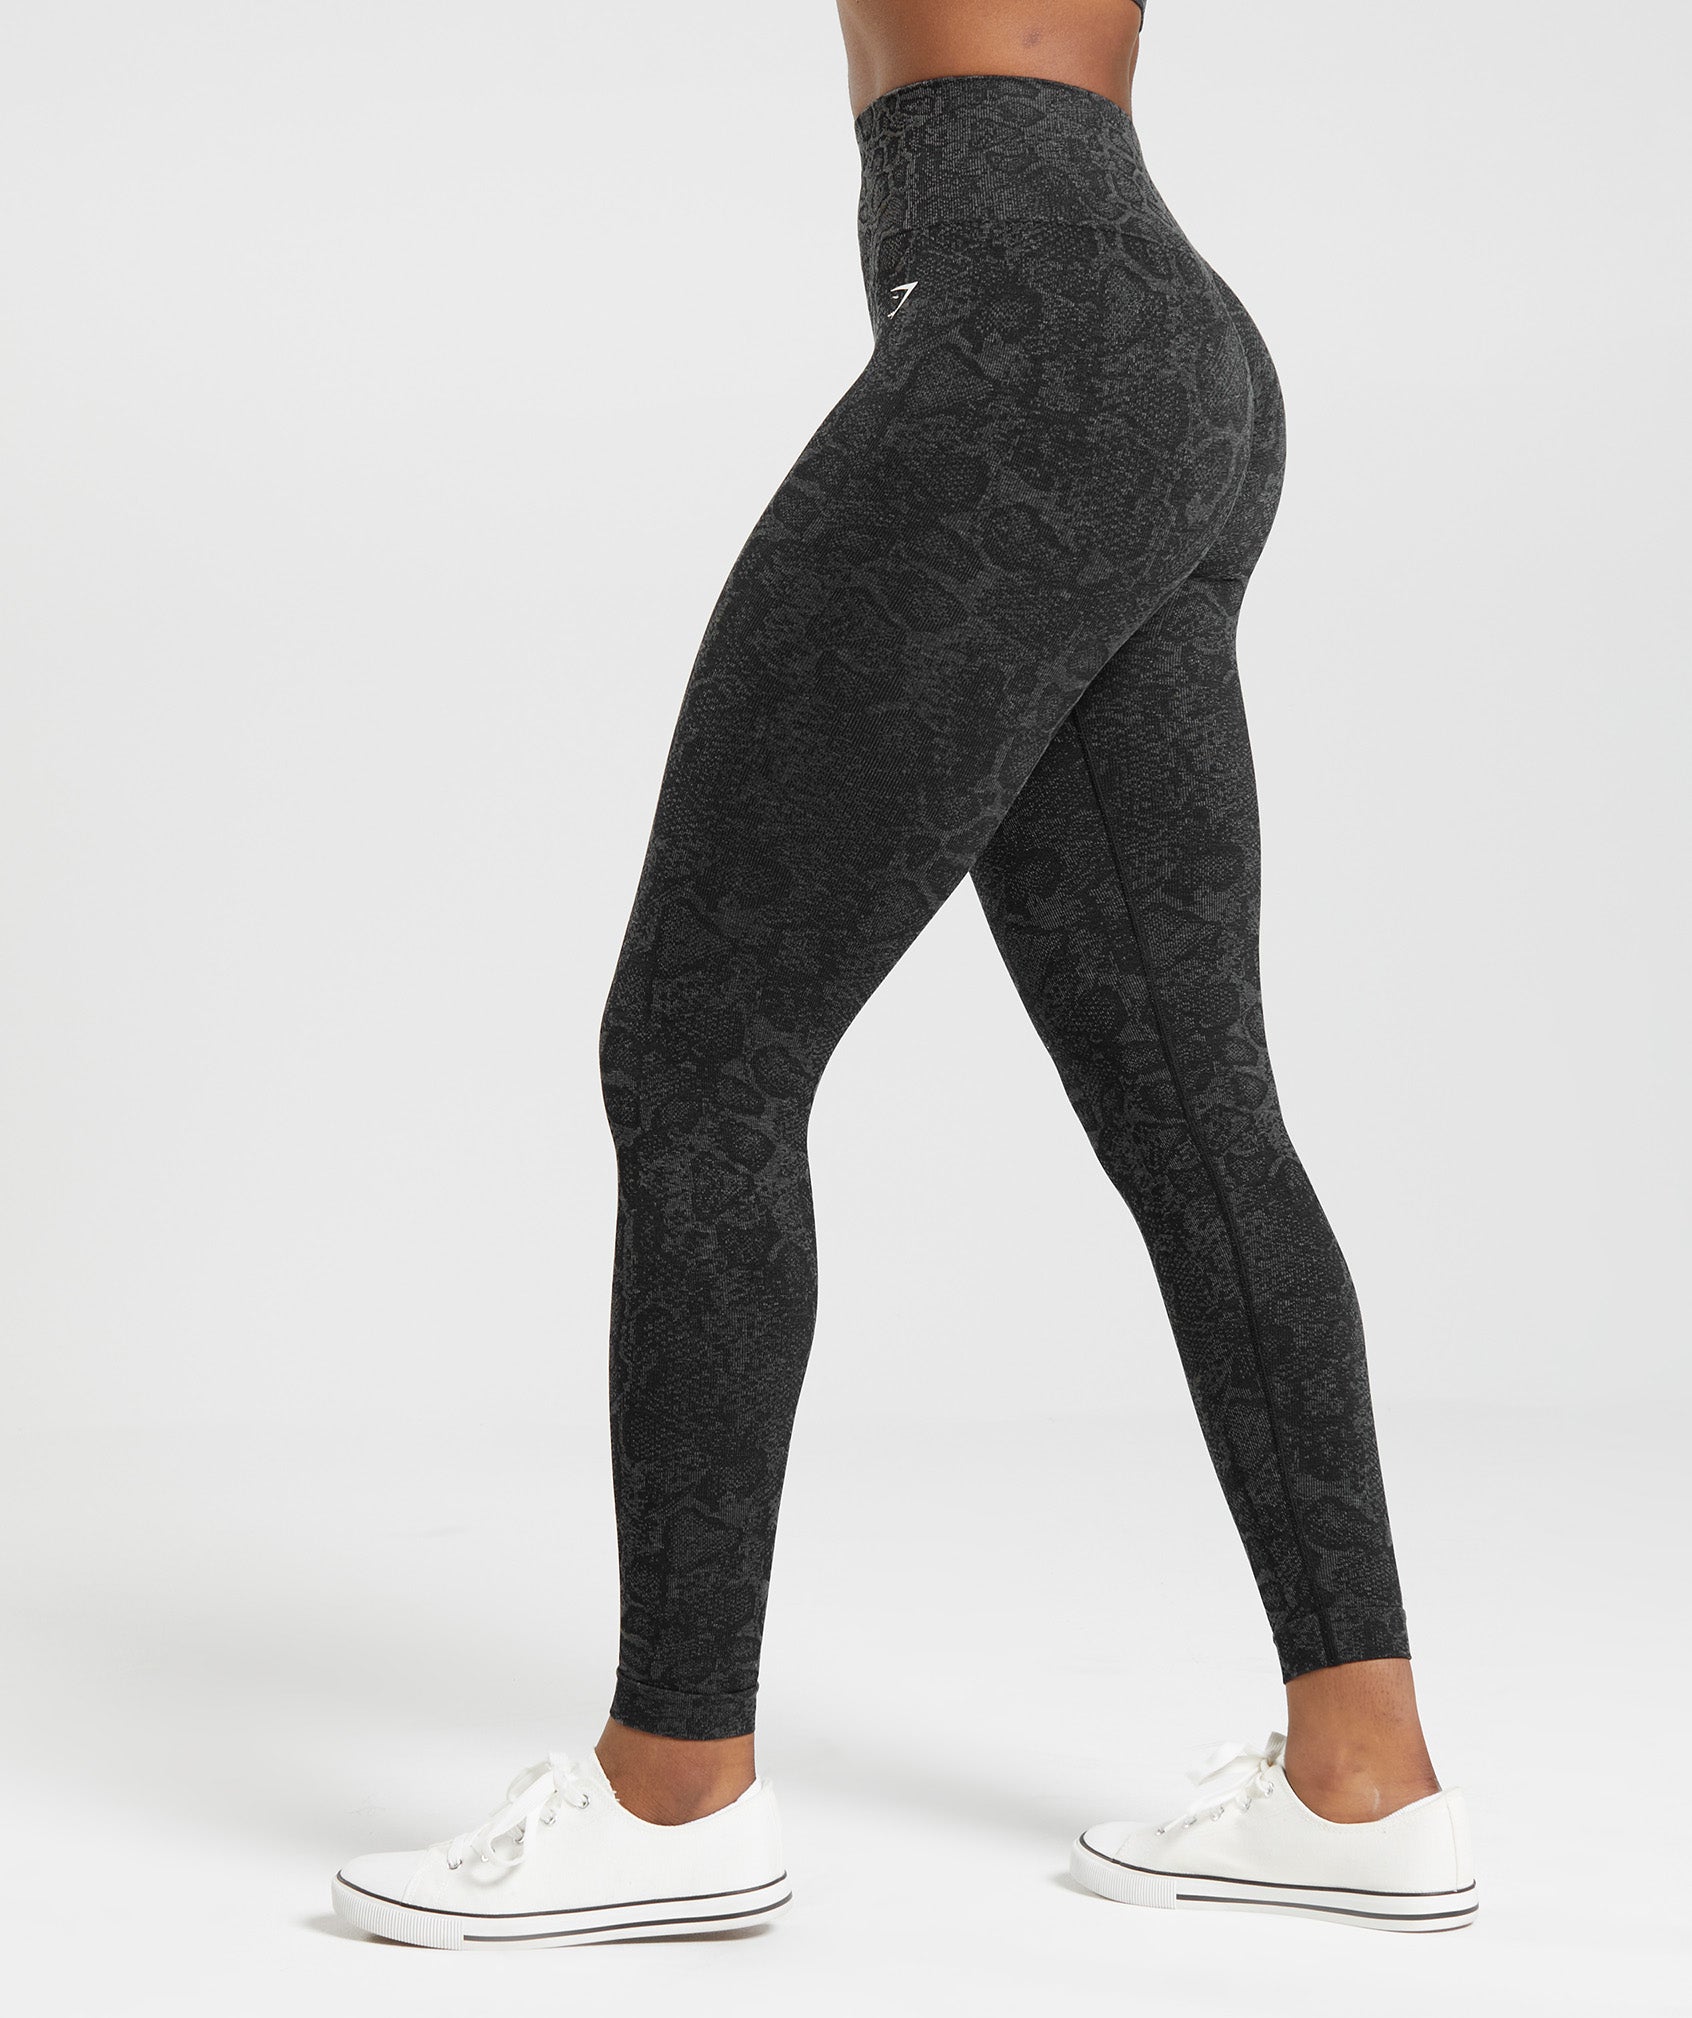 Gymshark - Black Gymshark Leggings on Designer Wardrobe